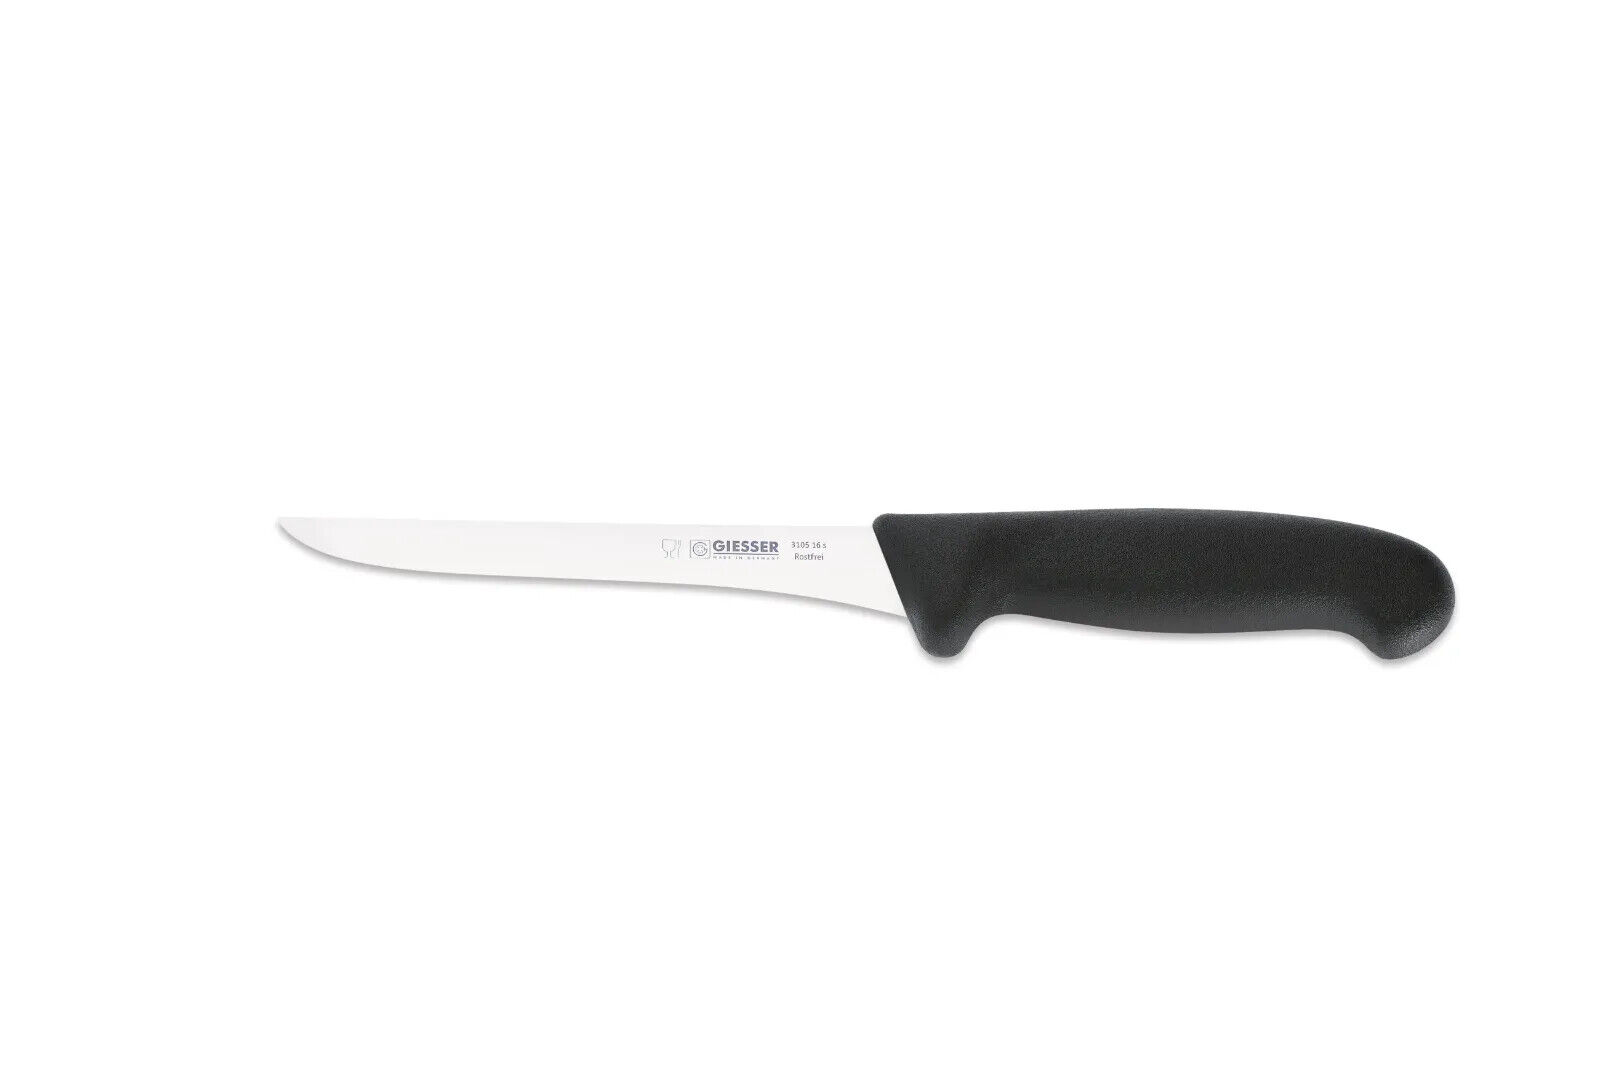 Giesser Messer Ausbeinmesser Fleischermesser gerader Rücken in 13 16 18 21 cm